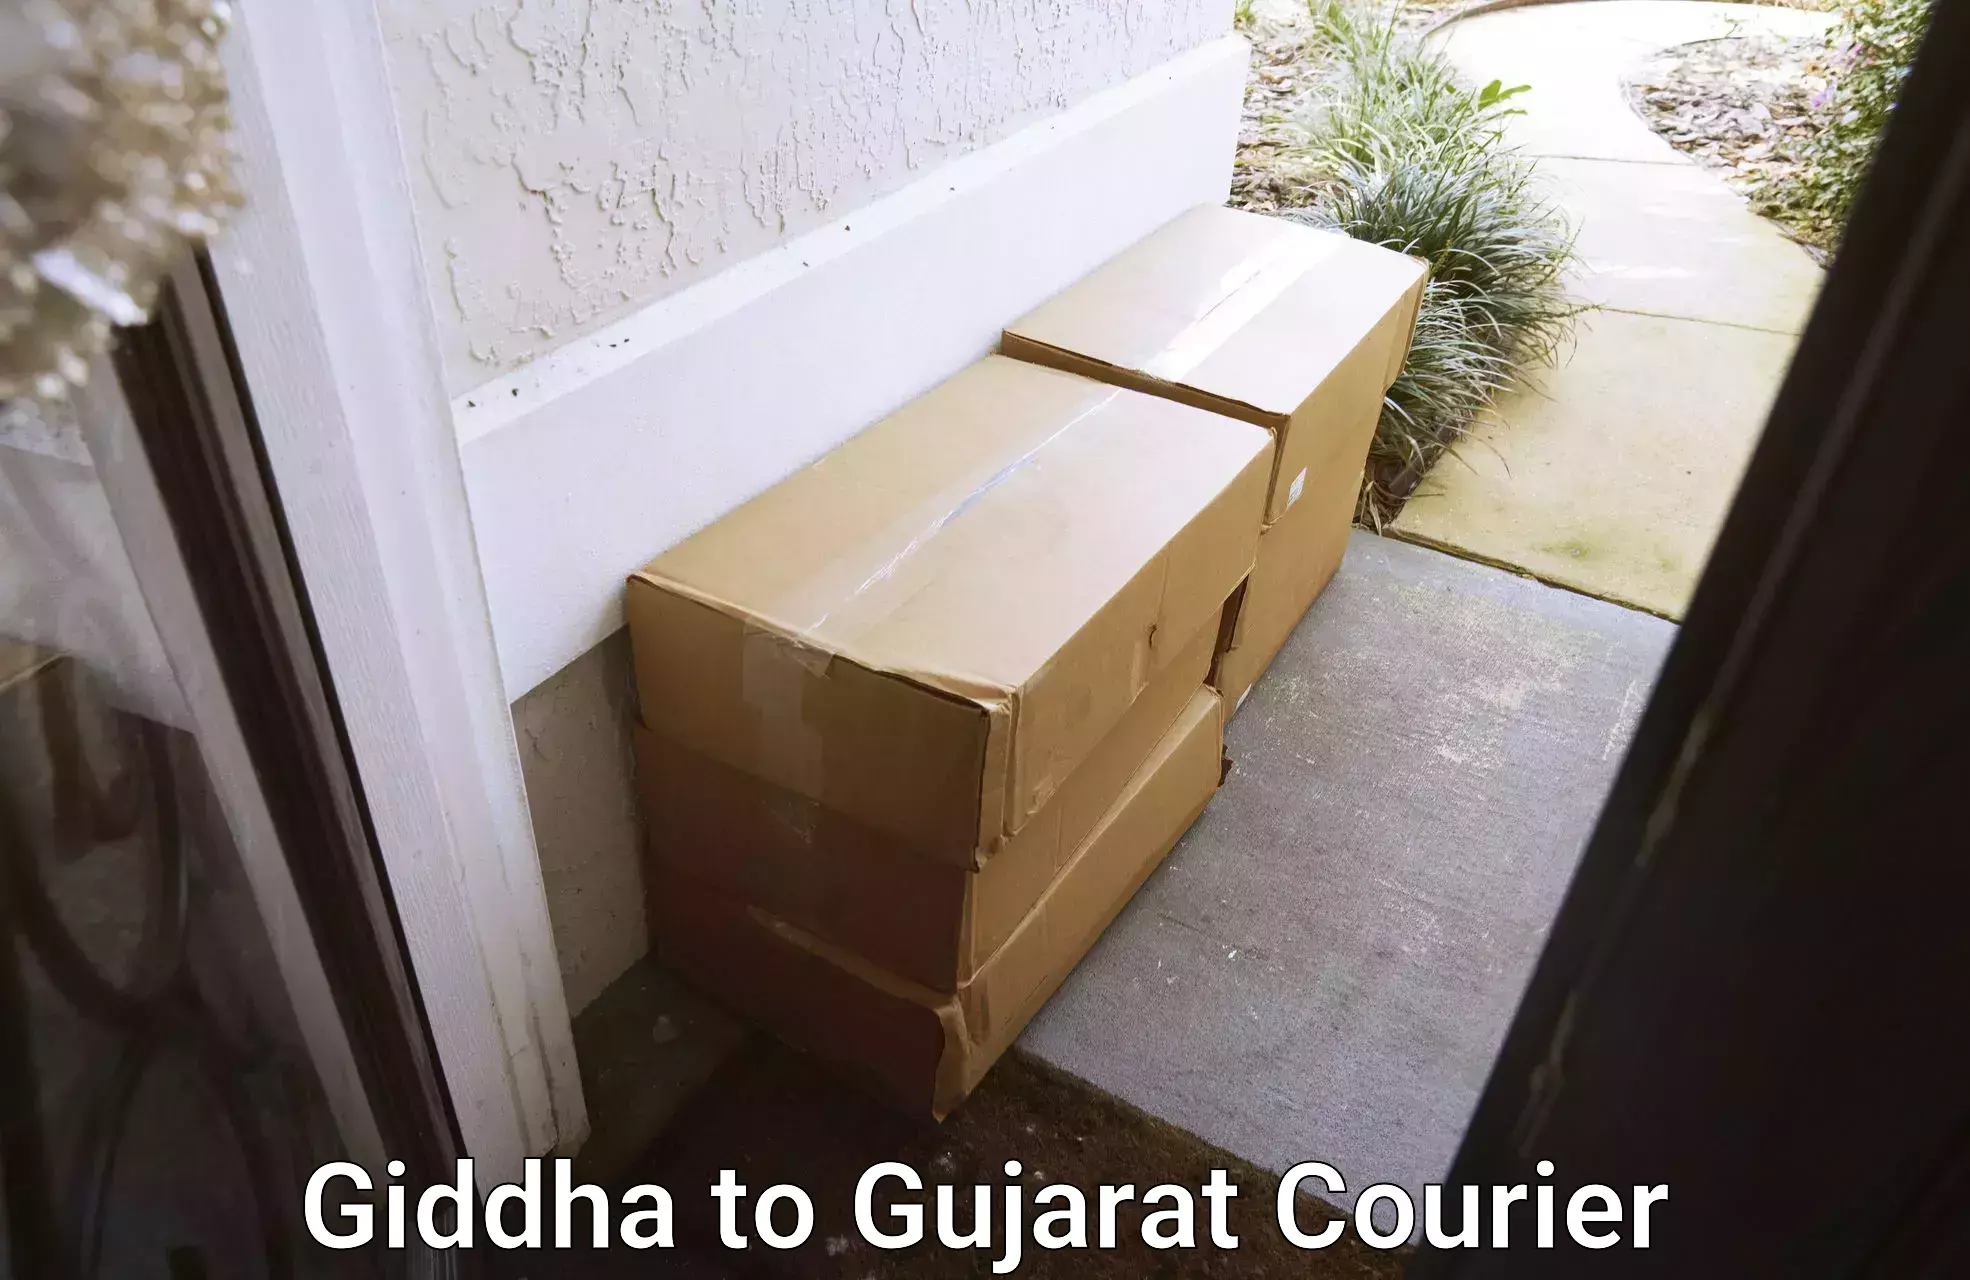 Professional home movers Giddha to Matar